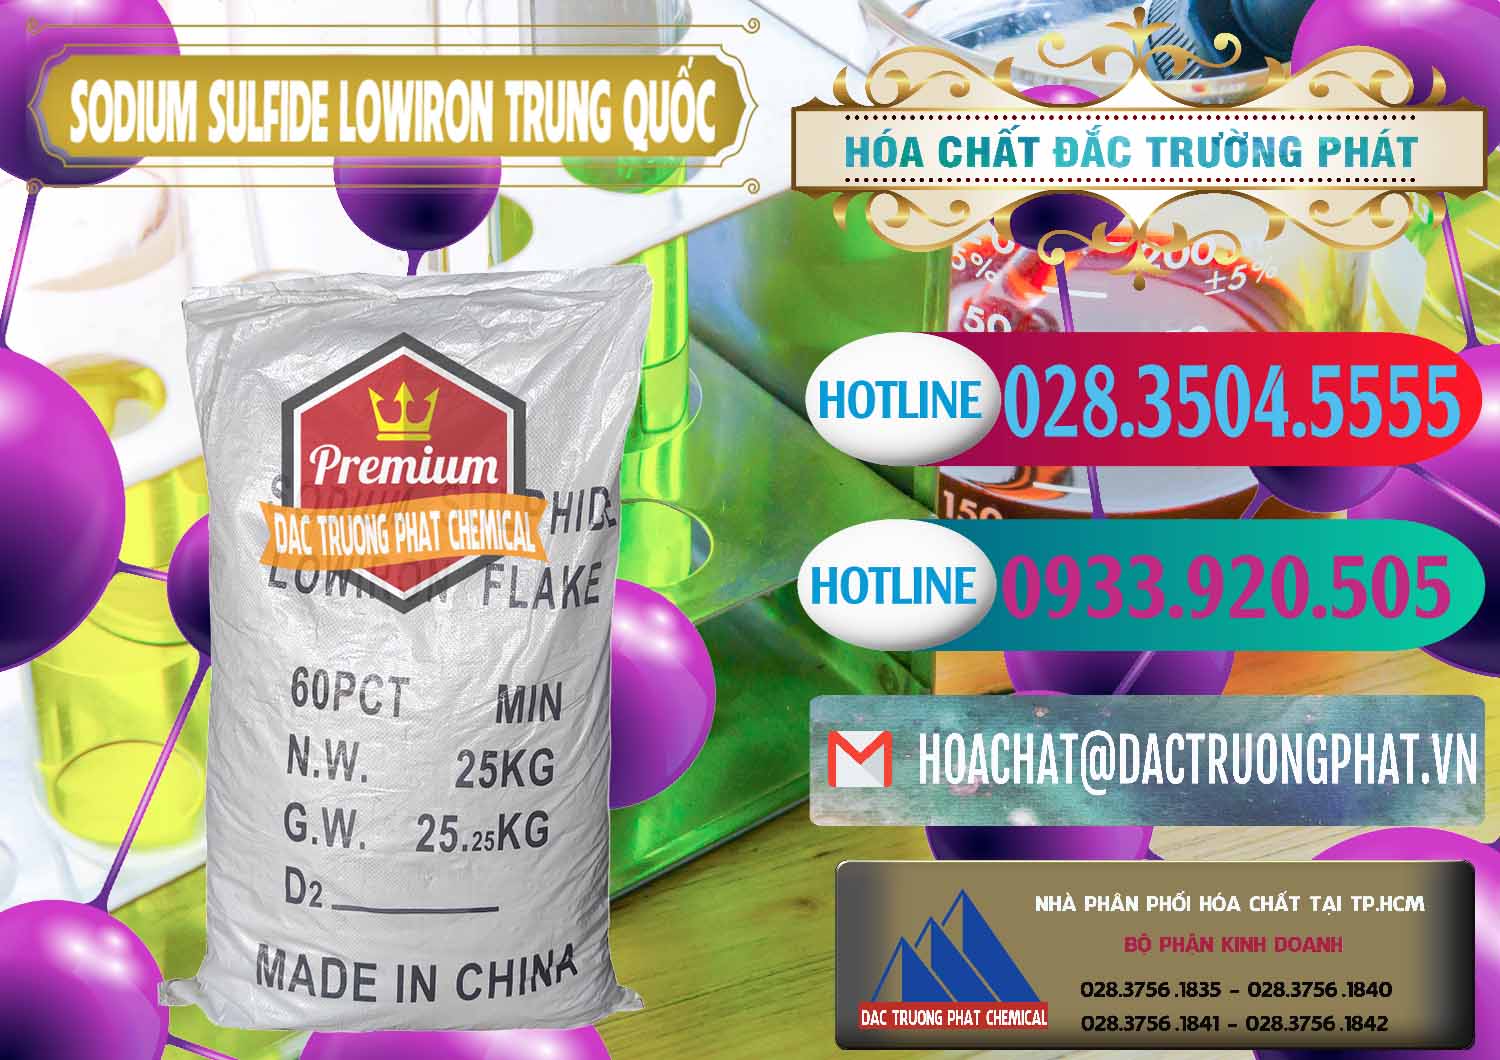 Công ty chuyên nhập khẩu và bán Sodium Sulfide NA2S – Đá Thối Lowiron Trung Quốc China - 0227 - Nhà cung cấp và phân phối hóa chất tại TP.HCM - truongphat.vn